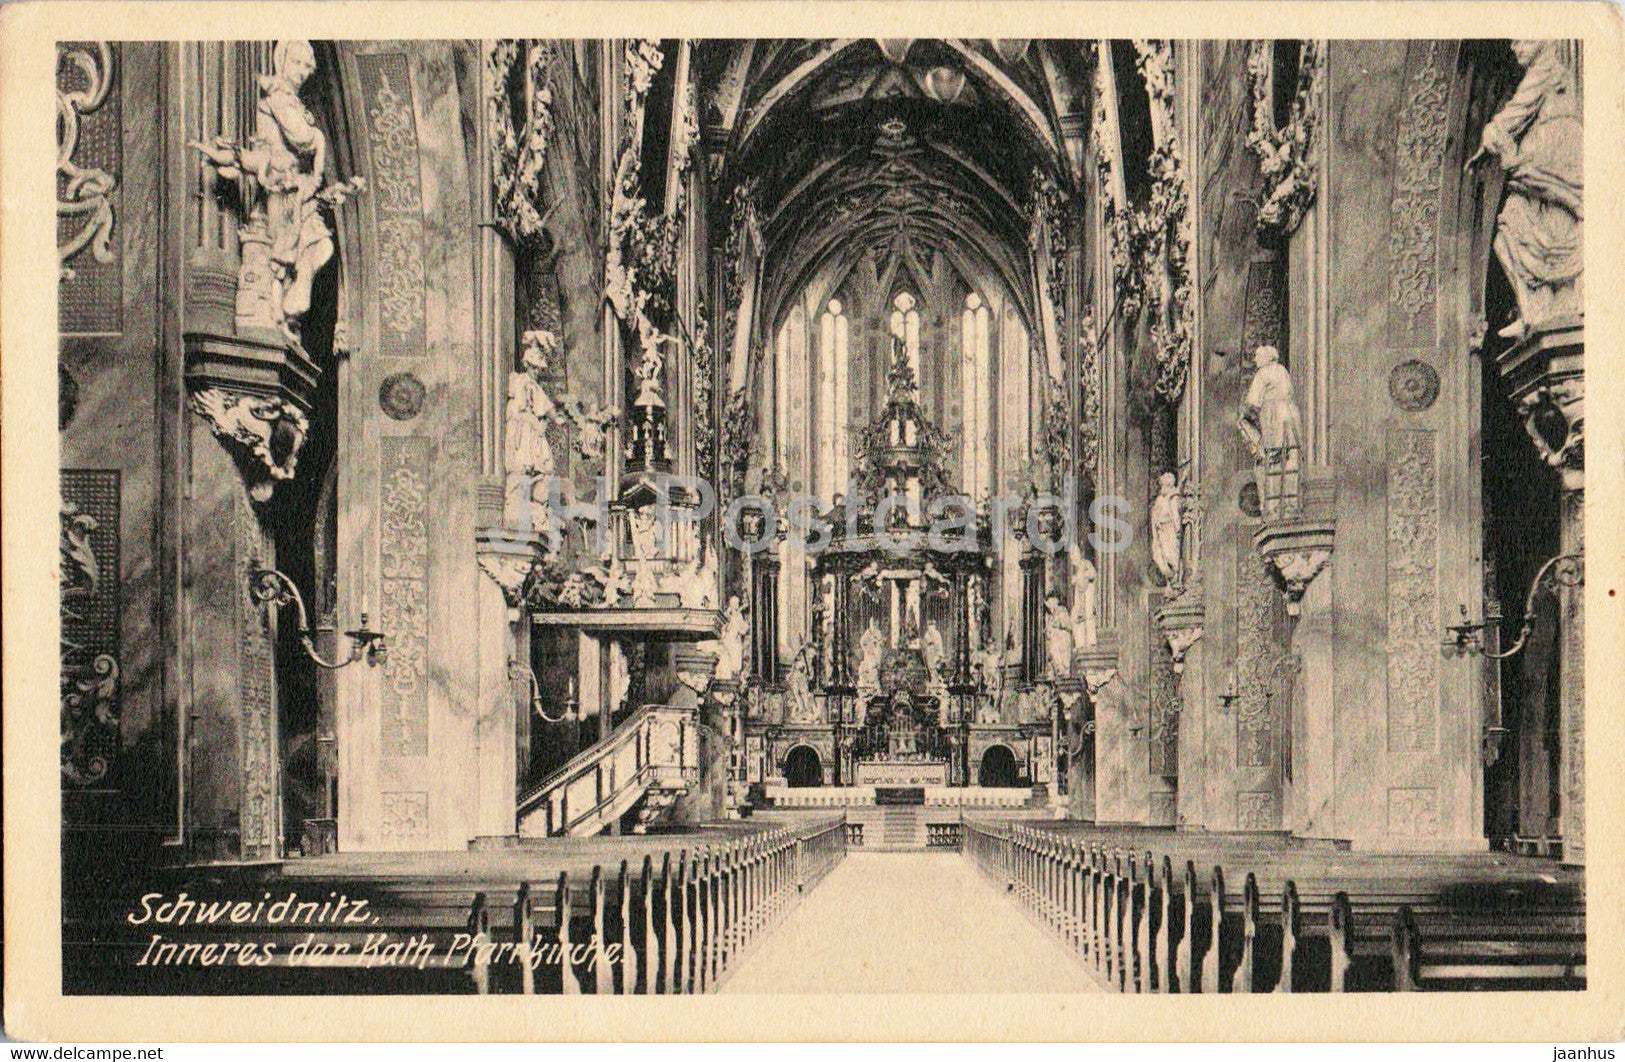 Schweidnitz - Swidnica - Inneres der Kath Pfarrkirche - church - old postcard - Poland - unused - JH Postcards